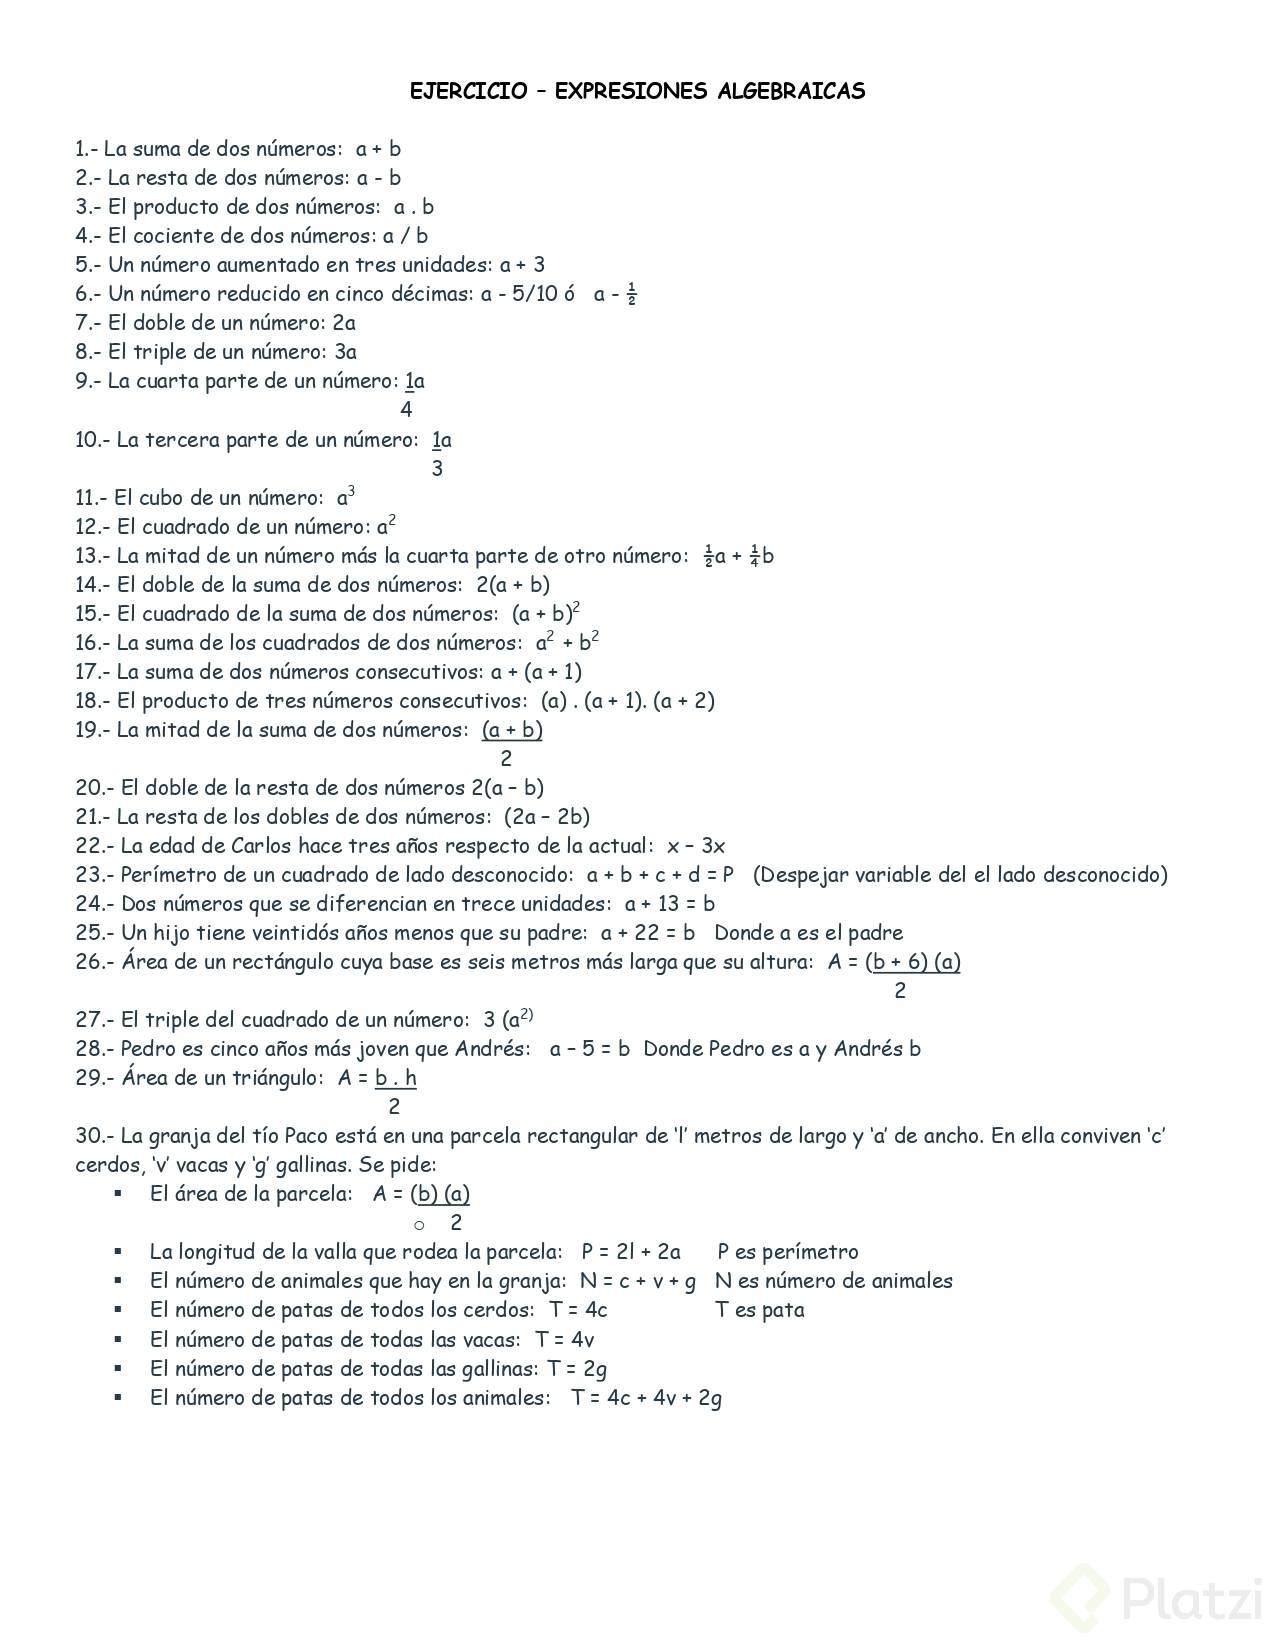 ALGEBRA - Ejercicio Expresiones Algebraicas .jpg